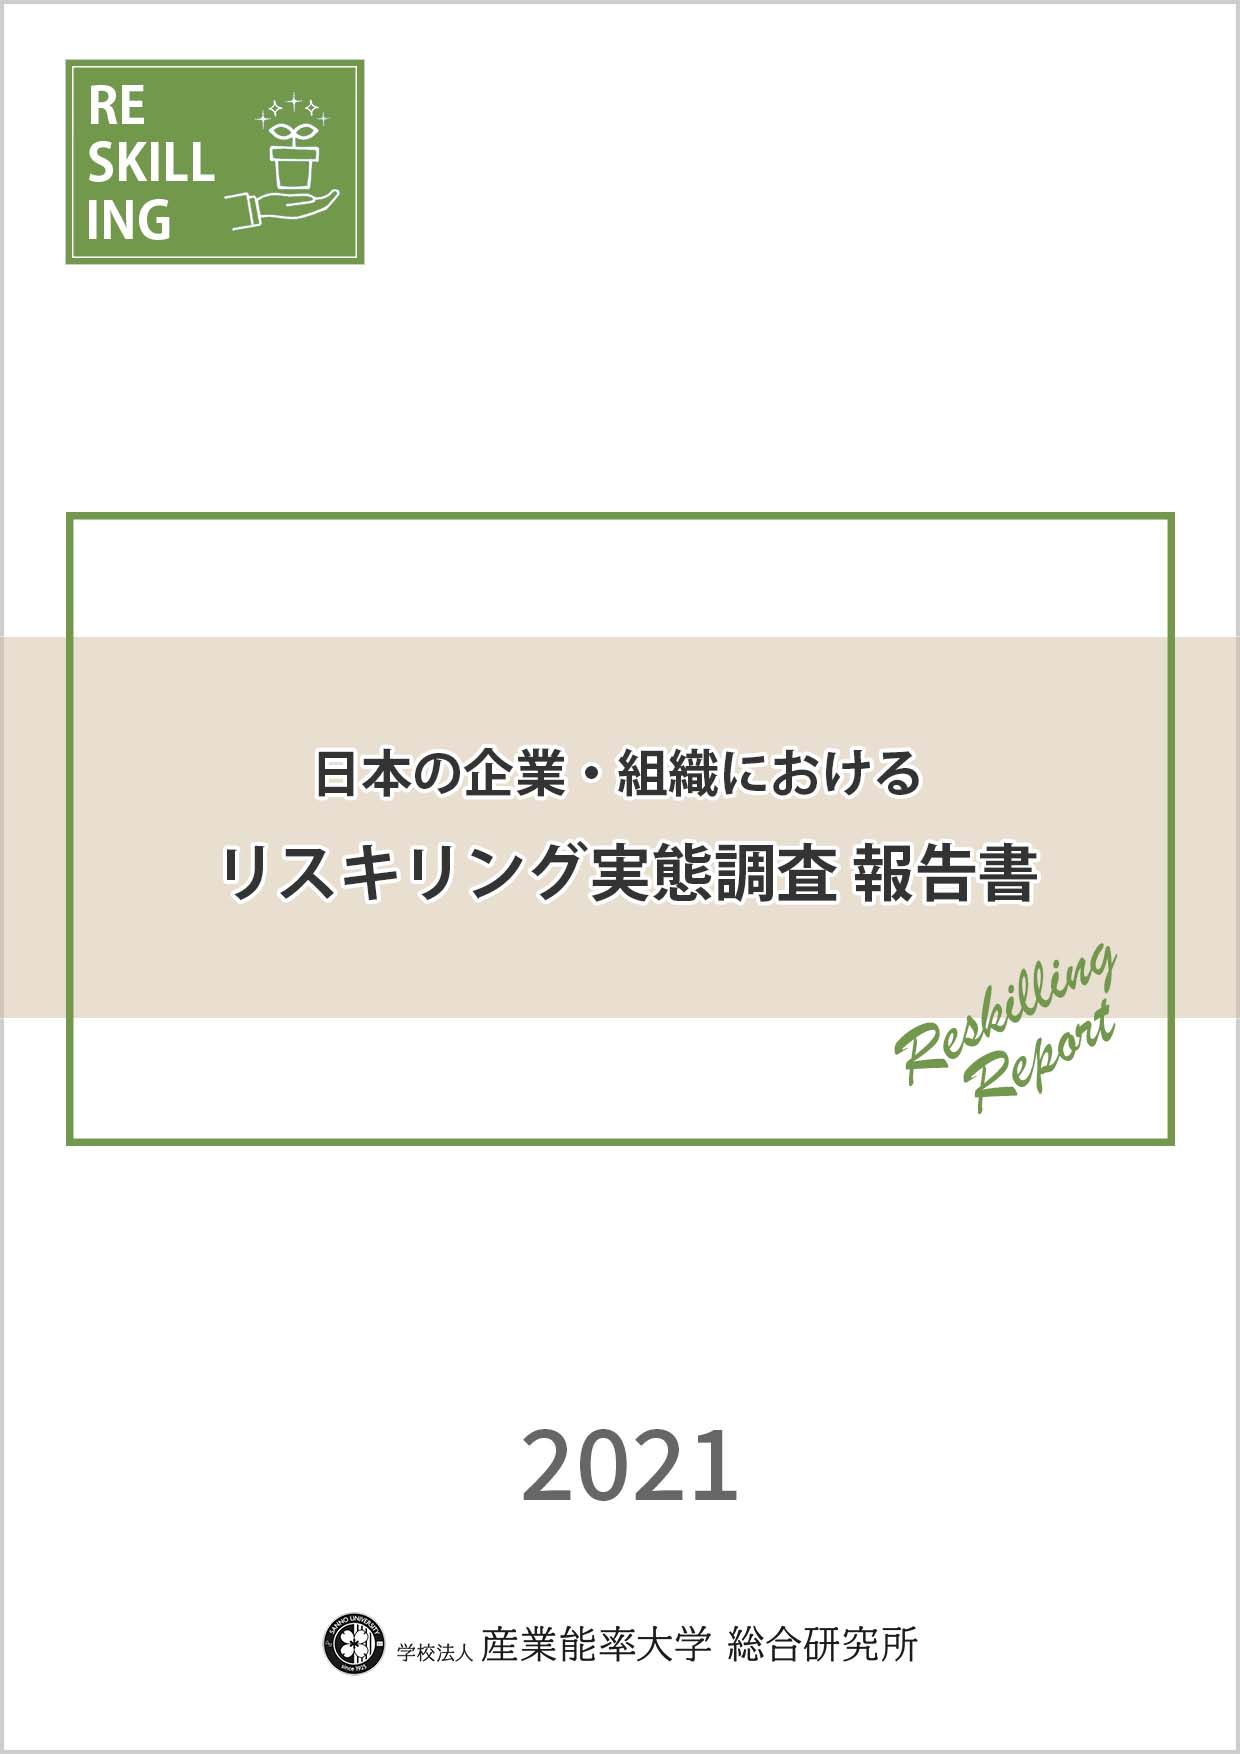 日本の企業・組織におけるリスキリング実態調査 報告書